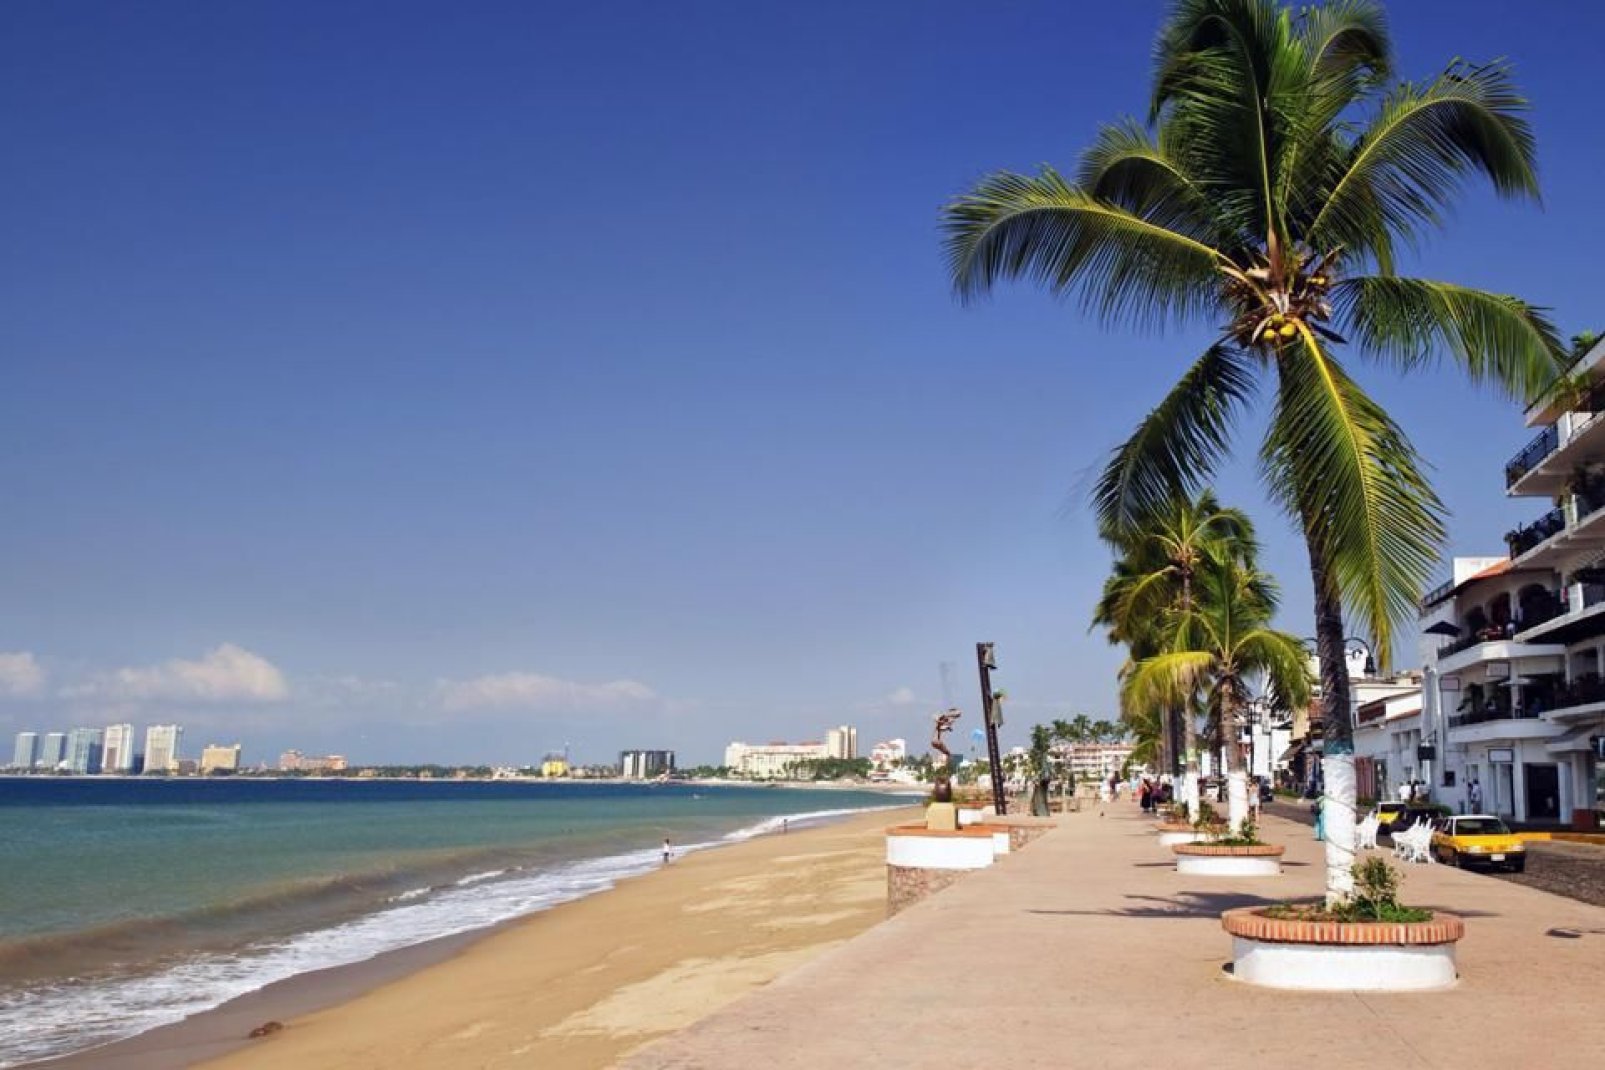 Puerto Vallarta è stat votata come la migliore meta messicana per le vacanze. Battuta solo da Cancun e Los Cabos